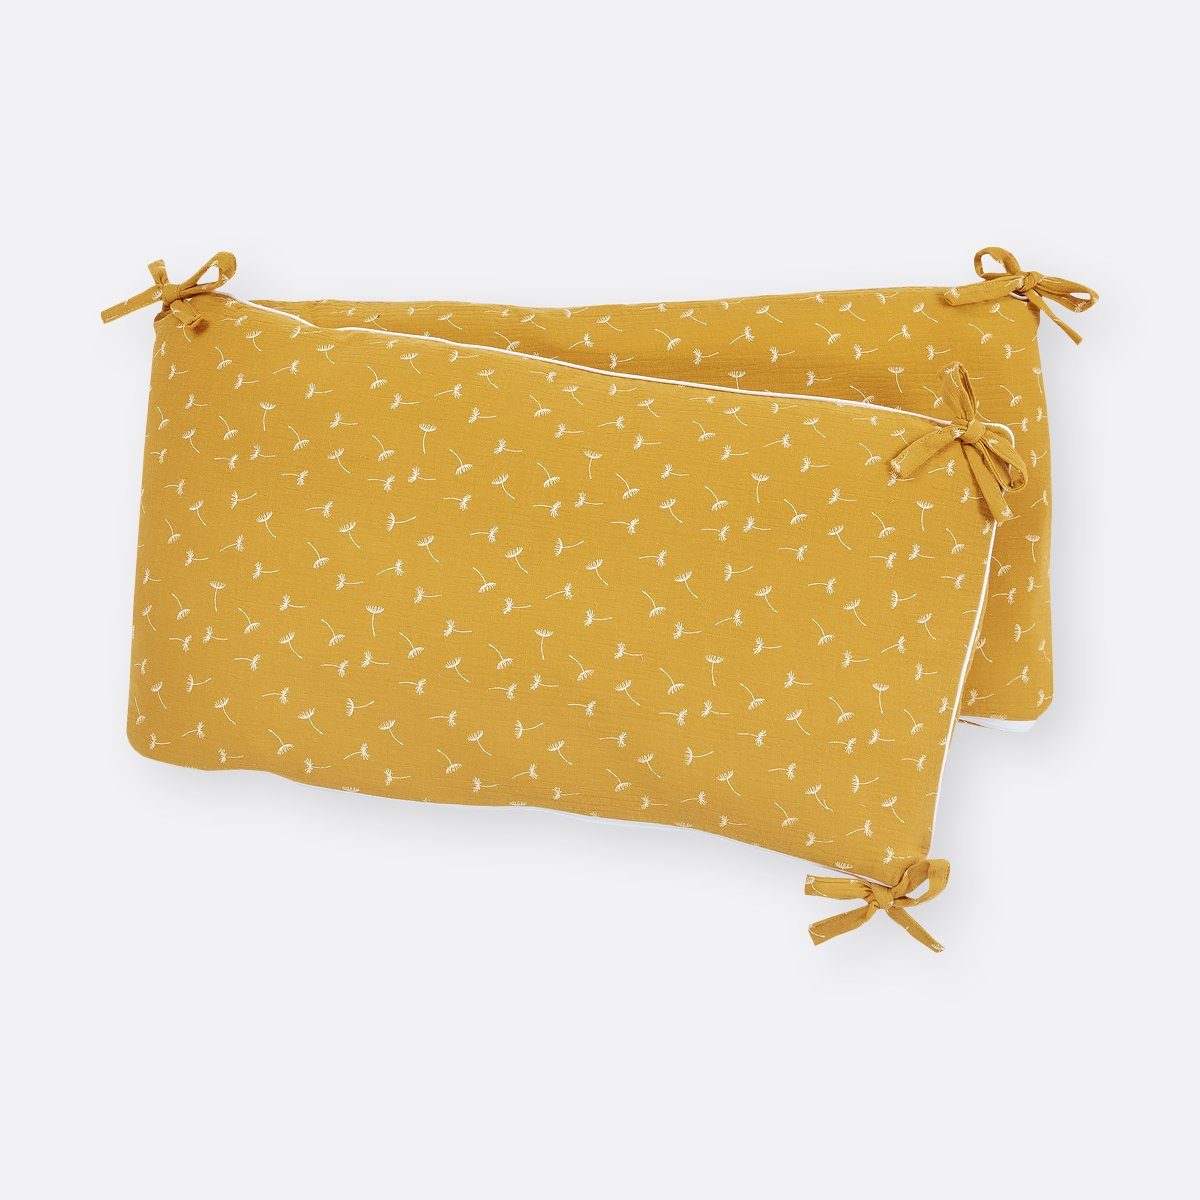 KraftKids Bettnestchen Musselin gelb Pusteblumen, für 140x70 cm Bett, 100% Baumwolle, abnehmbarer Bezug, Befestigungsbänder, drei Füllkissen